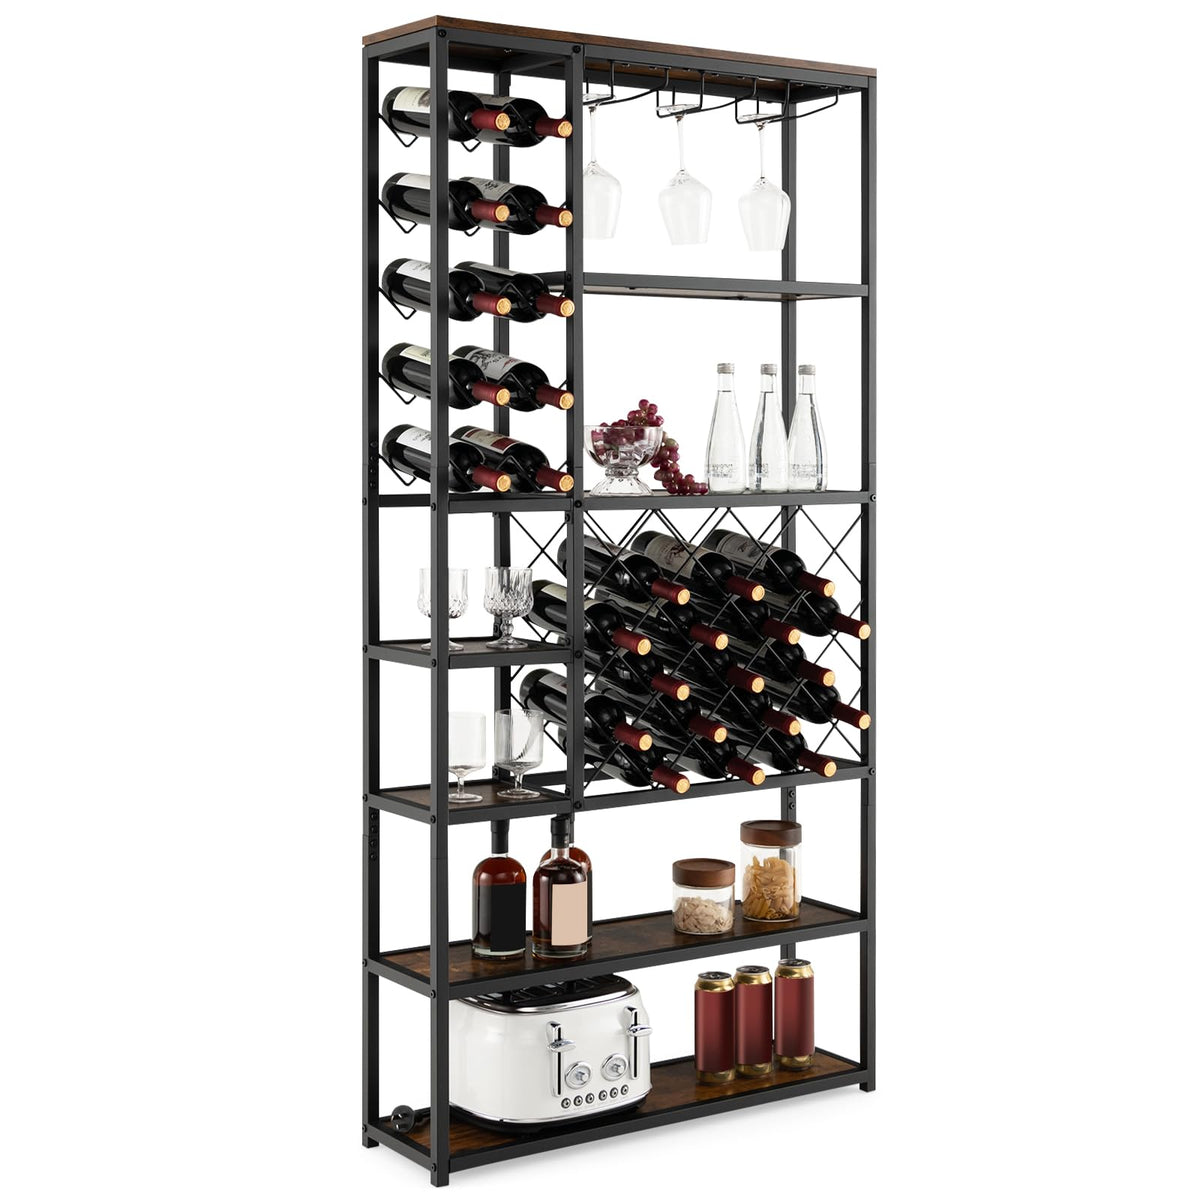 Giantex Industrial Floor Wine Rack, Freestanding Wine Rack